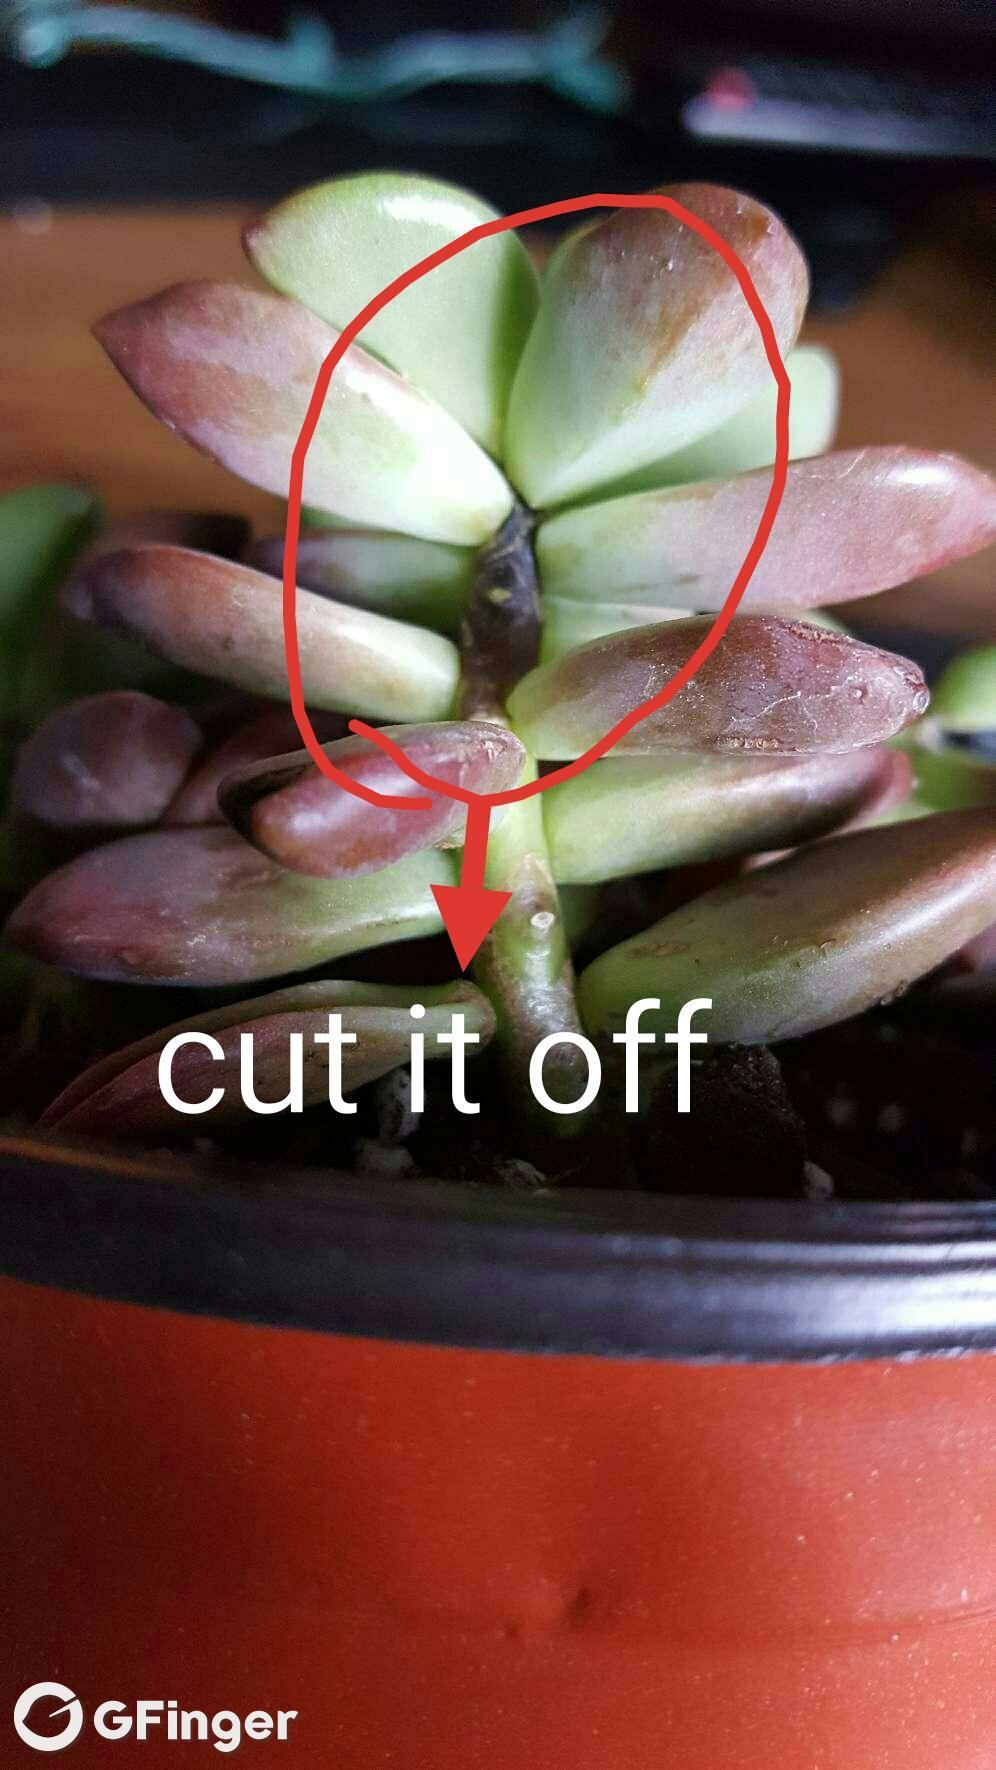 cut it off, or it will die